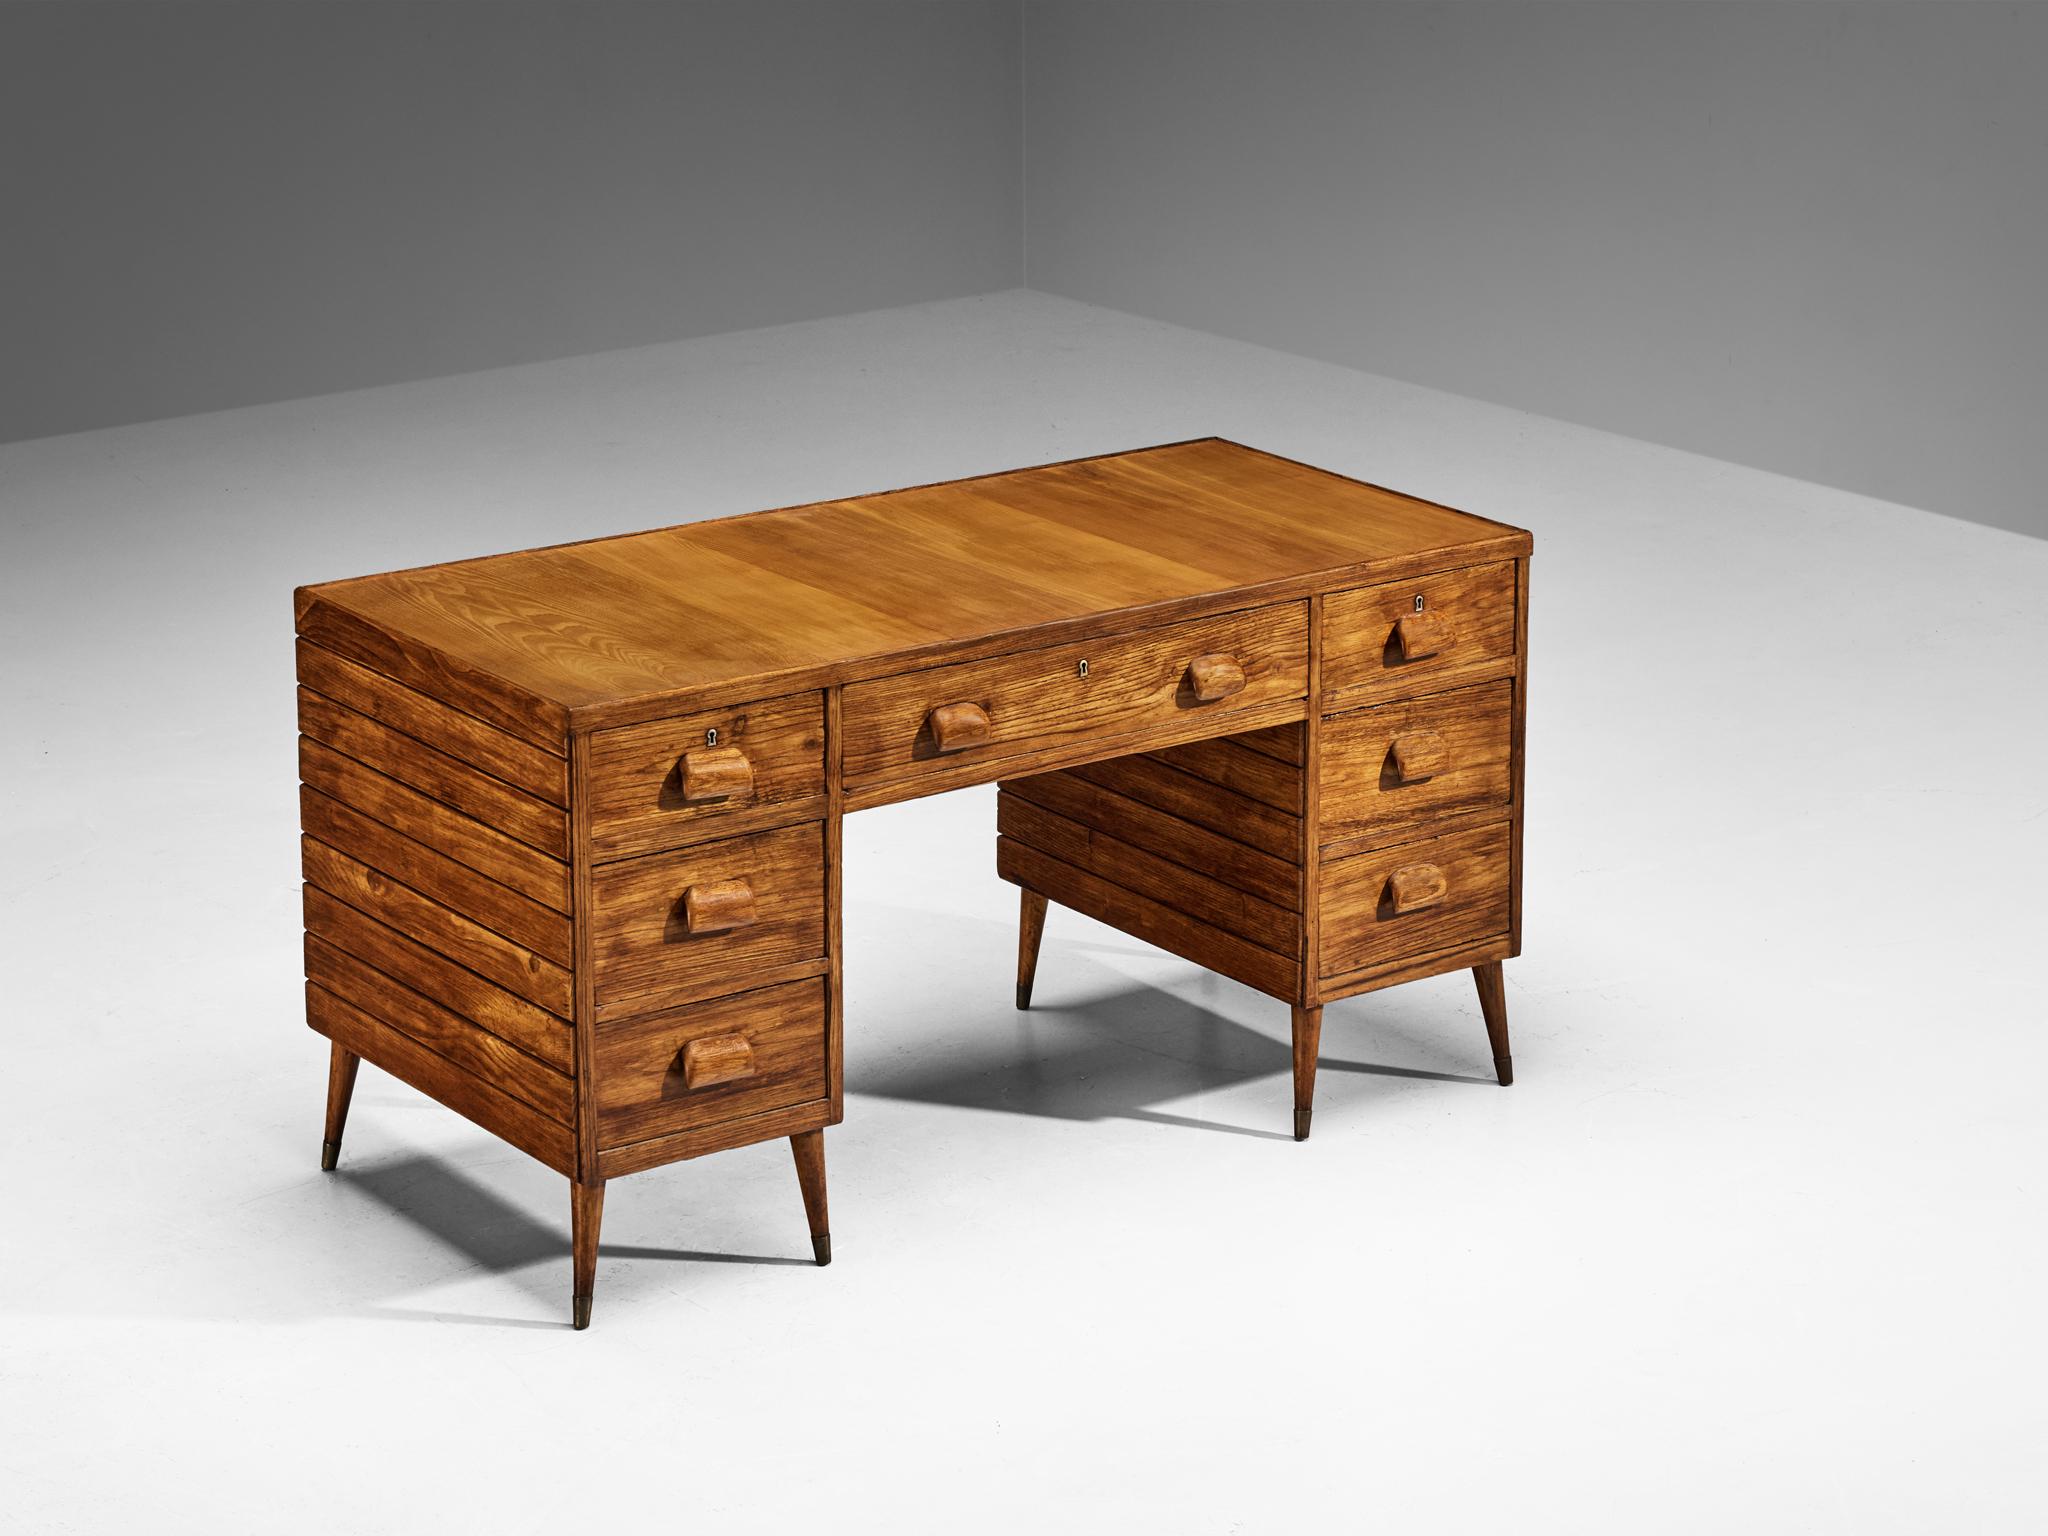 Schreibtisch, Esche, Messing, Italien, 1940er Jahre

Dieser in Italien hergestellte Schreibtisch ist ein Zeugnis des in den 1940er und 1950er Jahren vorherrschenden Designethos. Der Bürotisch zeugt von dem ausgezeichneten Geschmack des Designers für